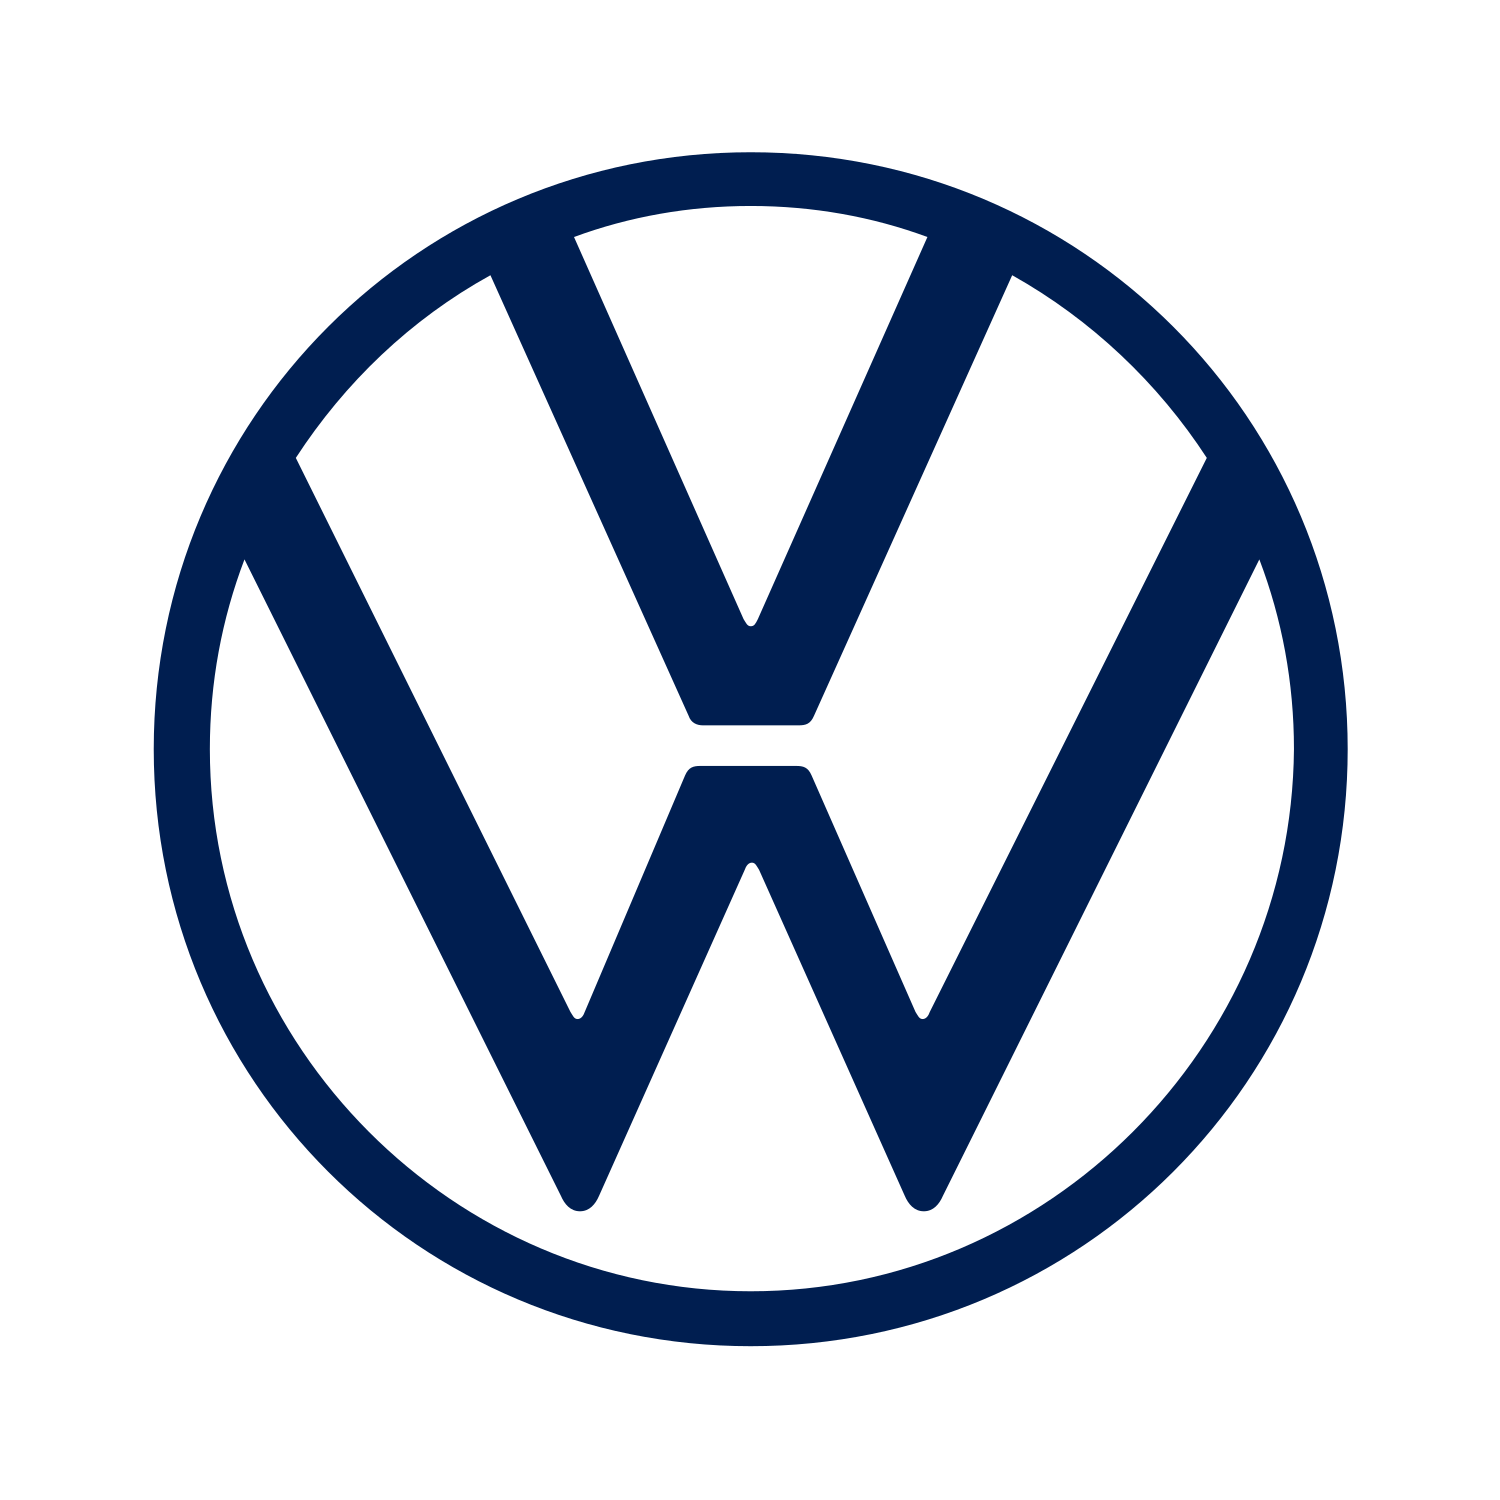 volkswagen logo2020 - Volkswagen Slovakia - Sabris.com